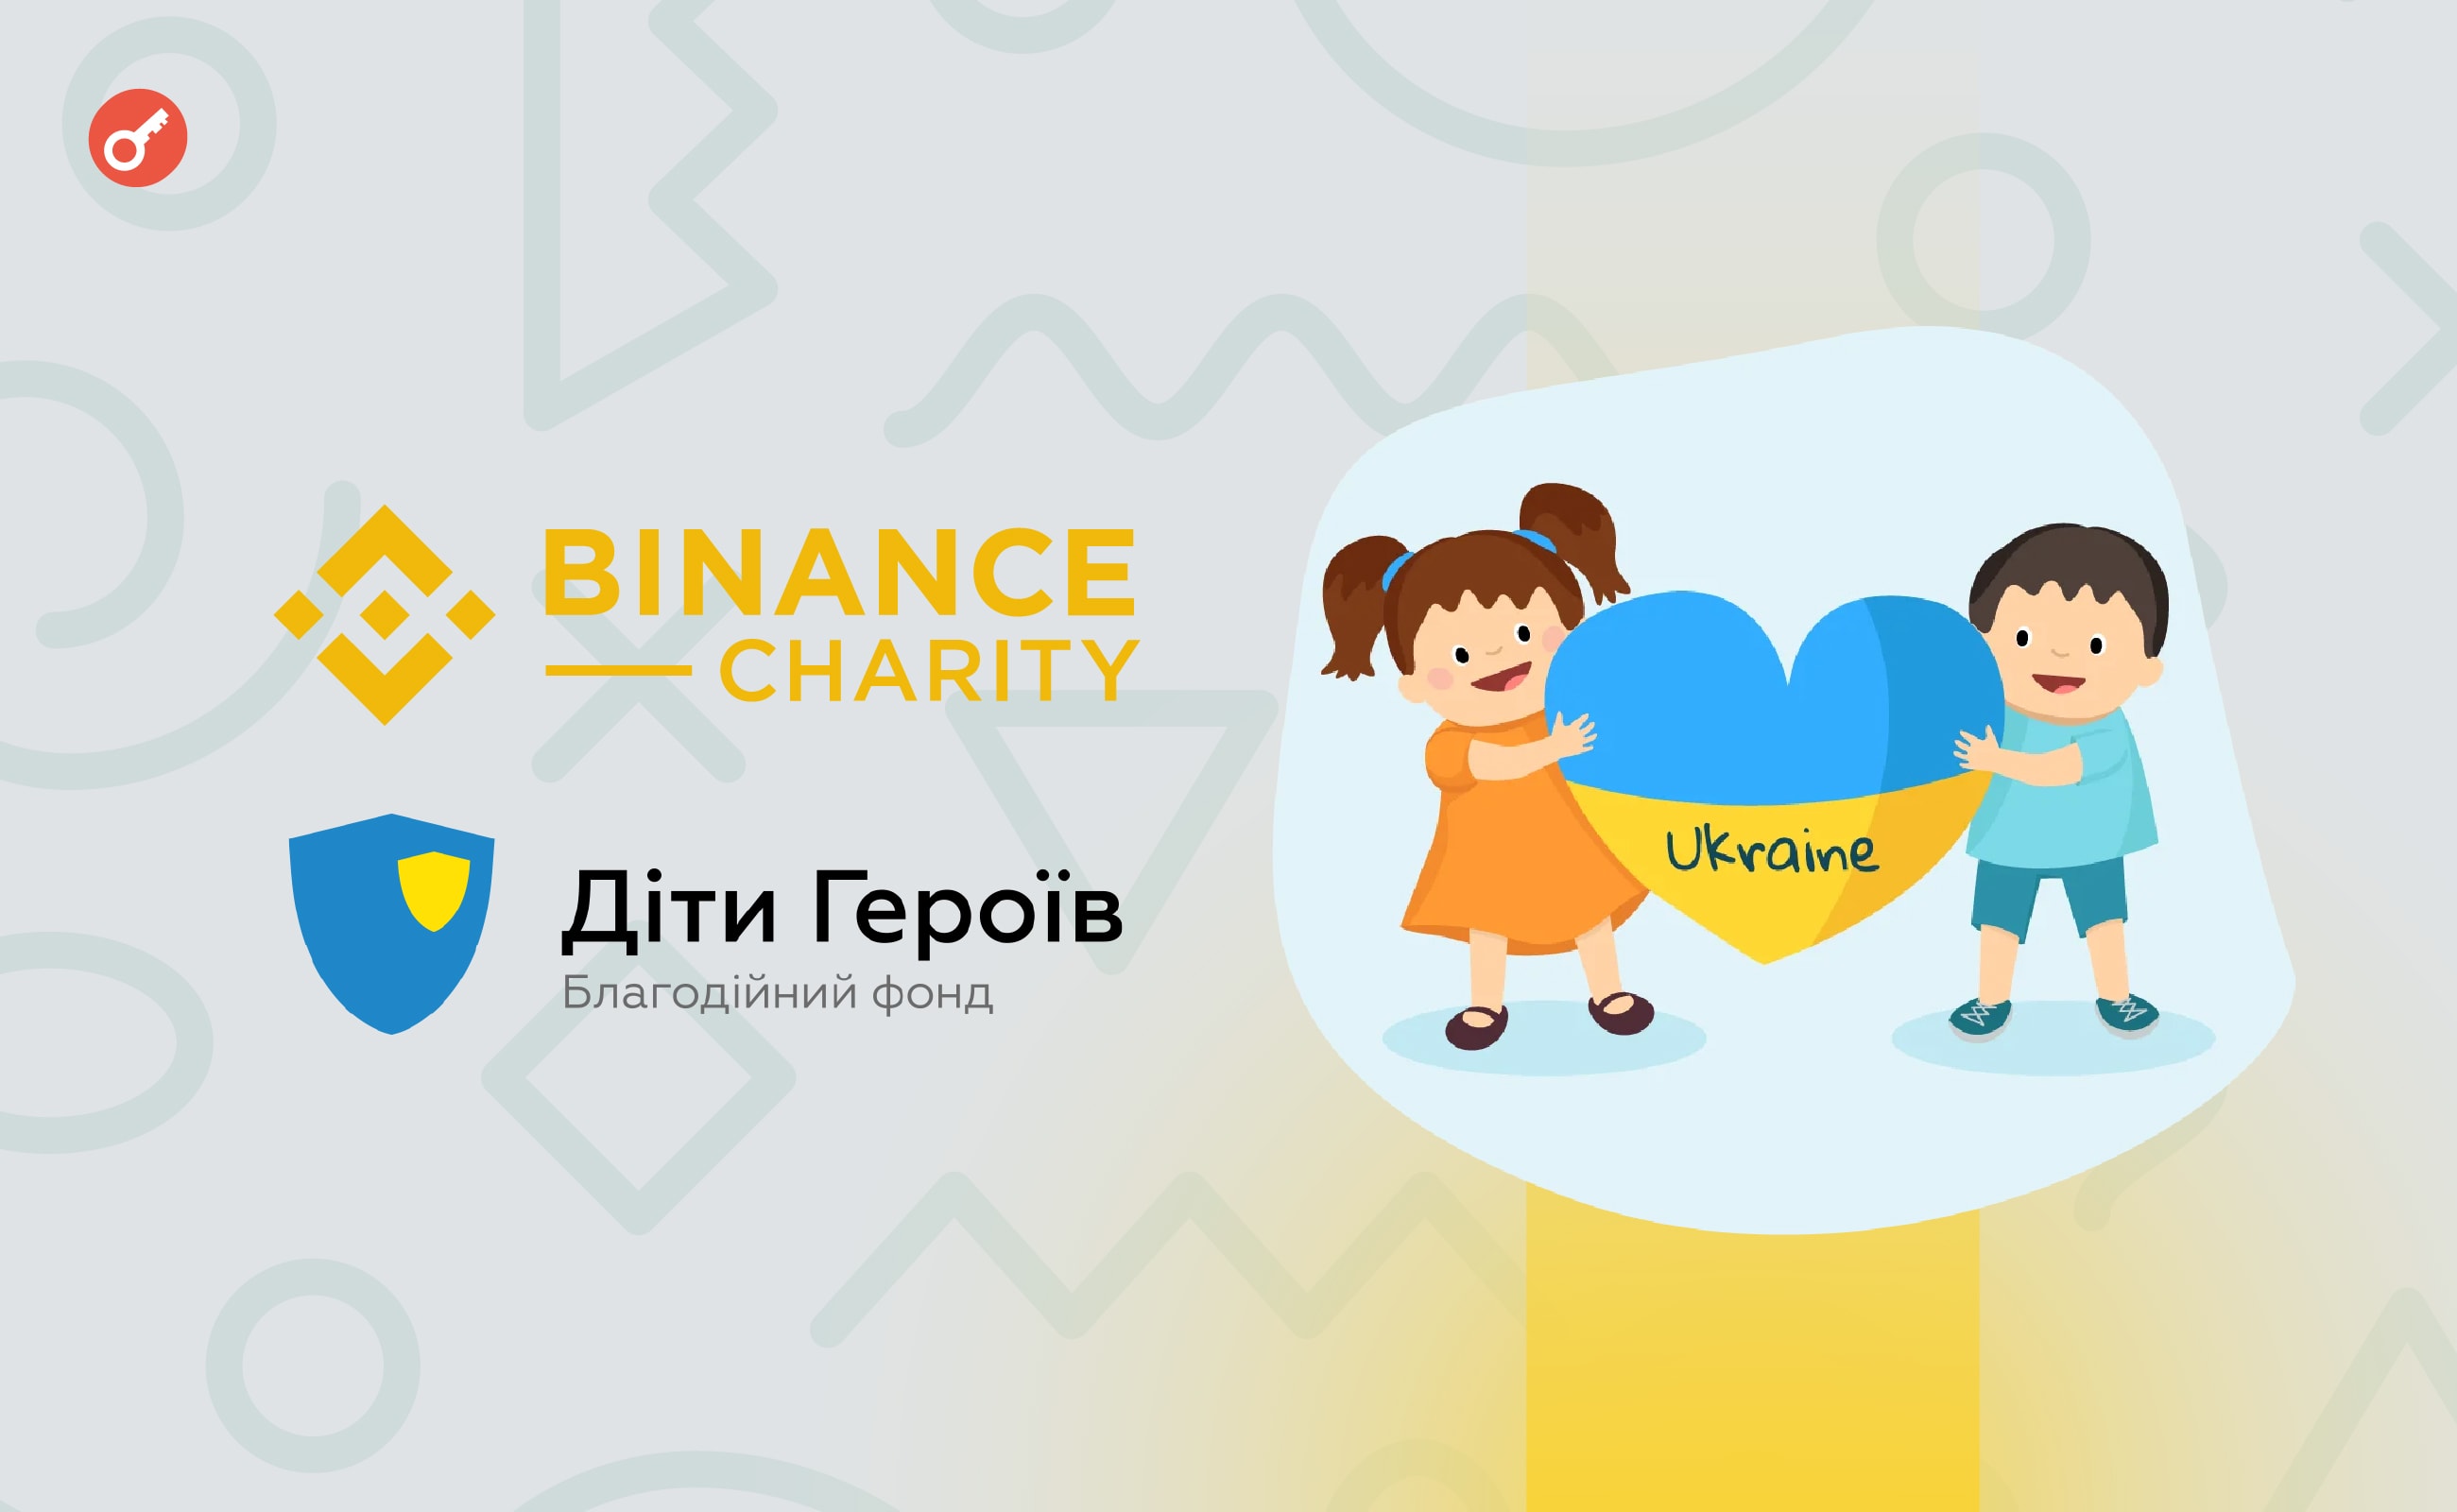 Binance Charity и фонд «Дети Героев» объединились для поддержки пострадавших от войны в Украине детей. Заглавный коллаж новости.